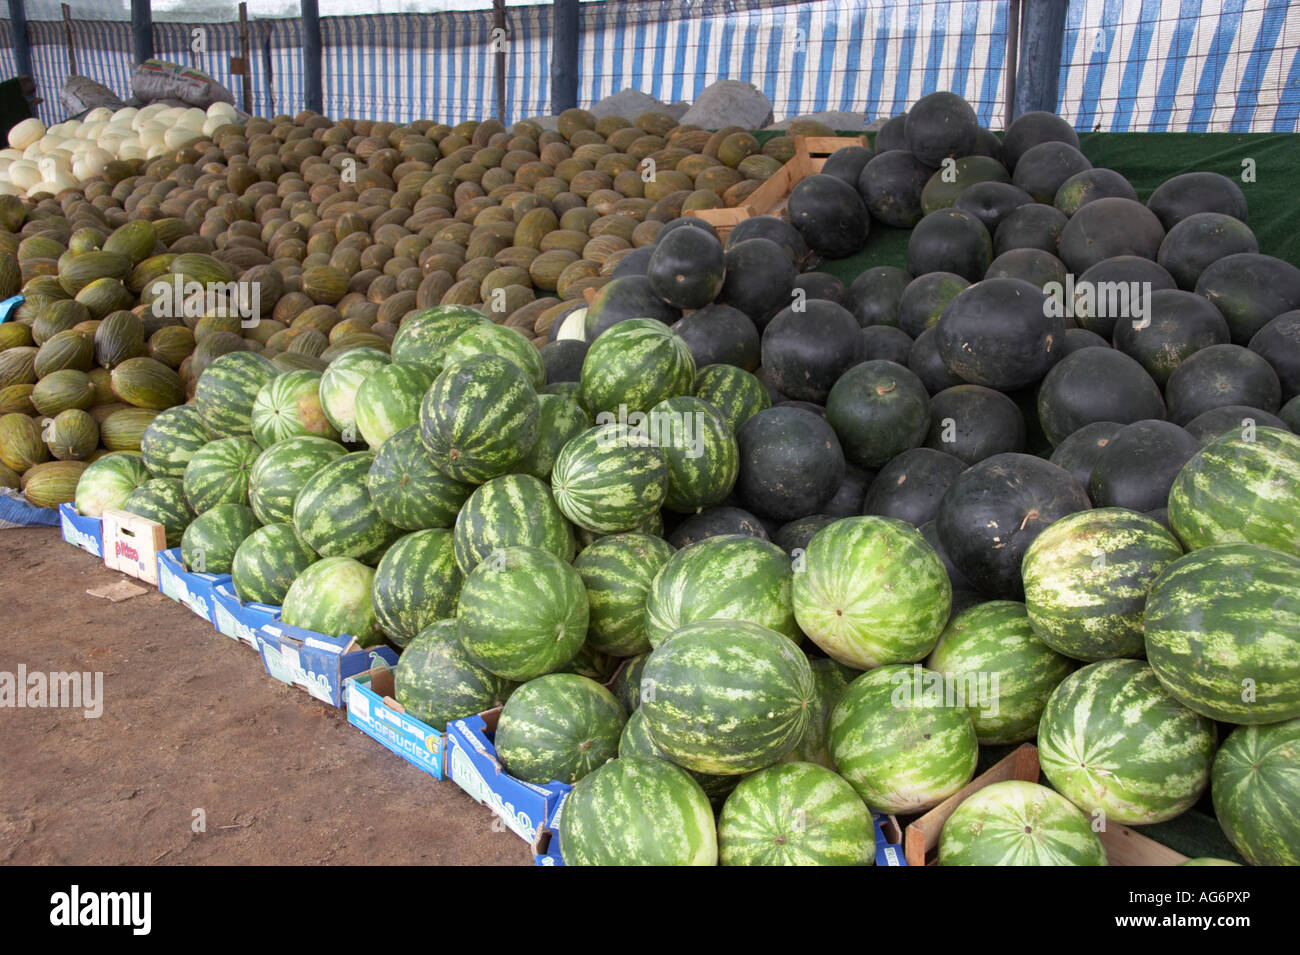 melones-para-venta-en-puesto-callejero-portugal-ag6pxp.jpg